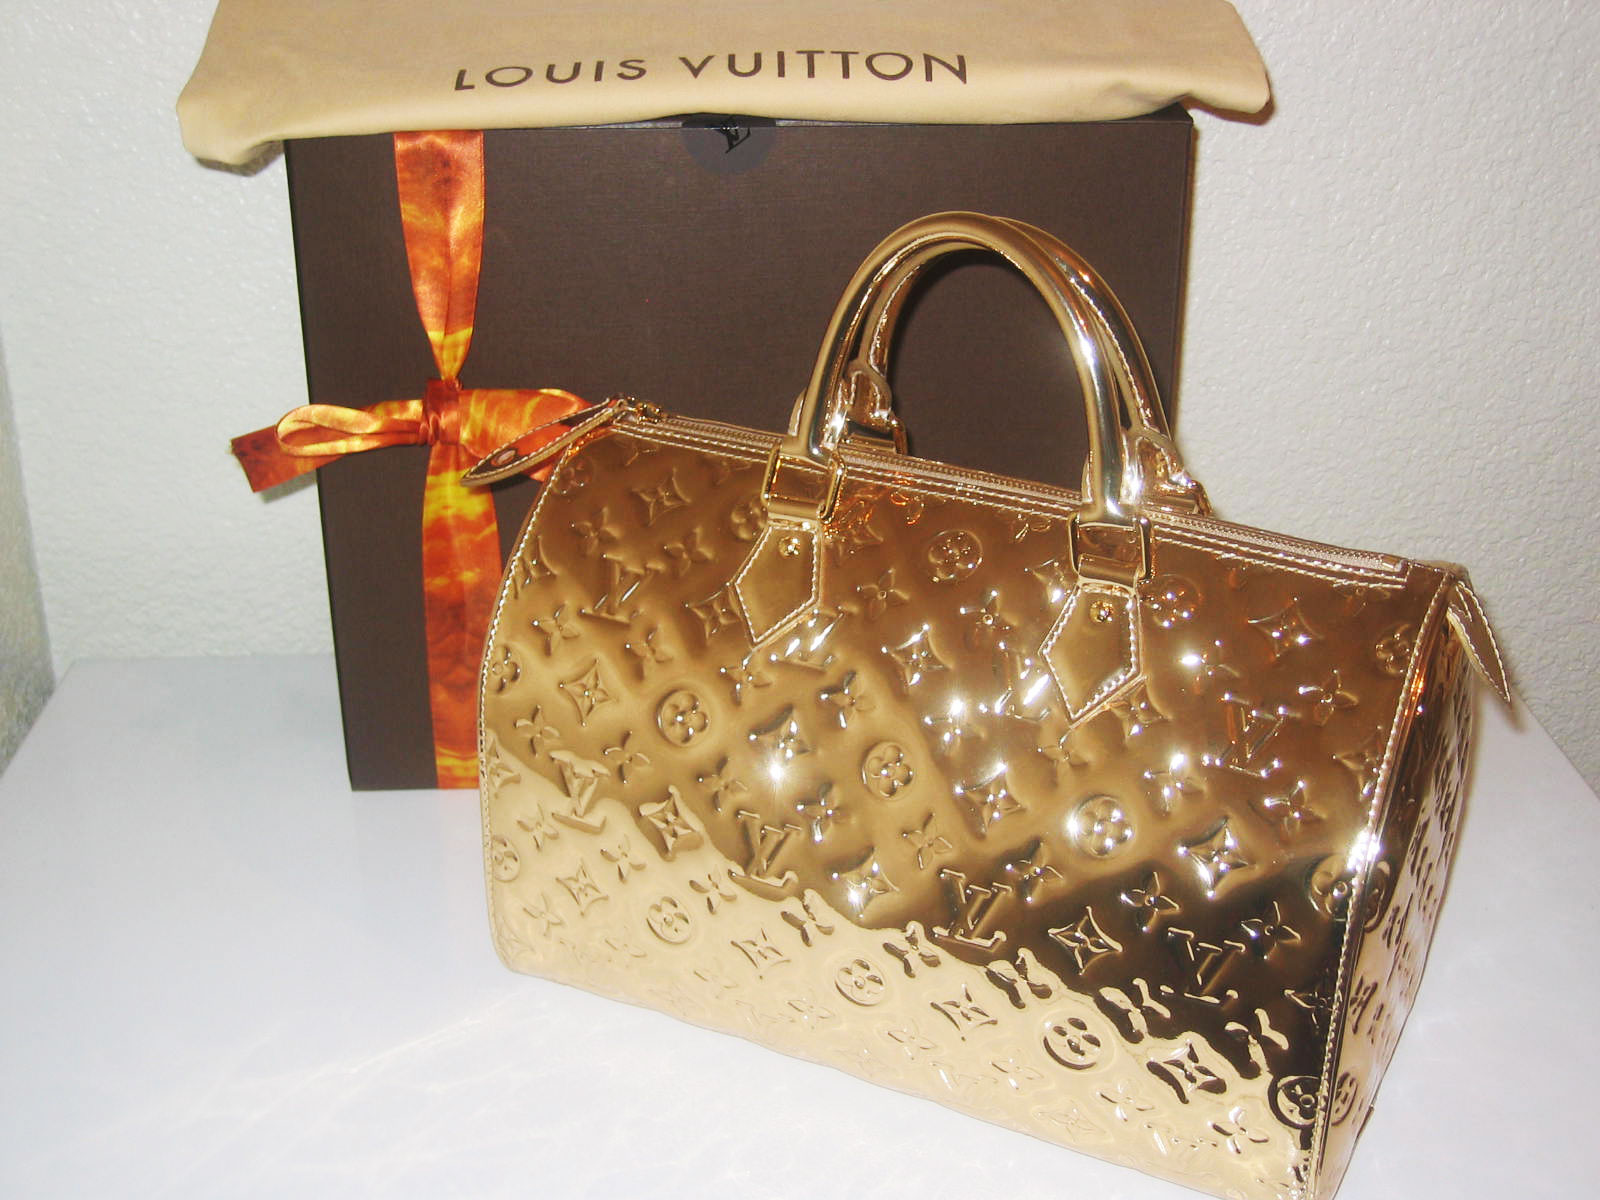 A Louis Vuitton Coussin Reminiscent of LV Multicolore - PurseBlog